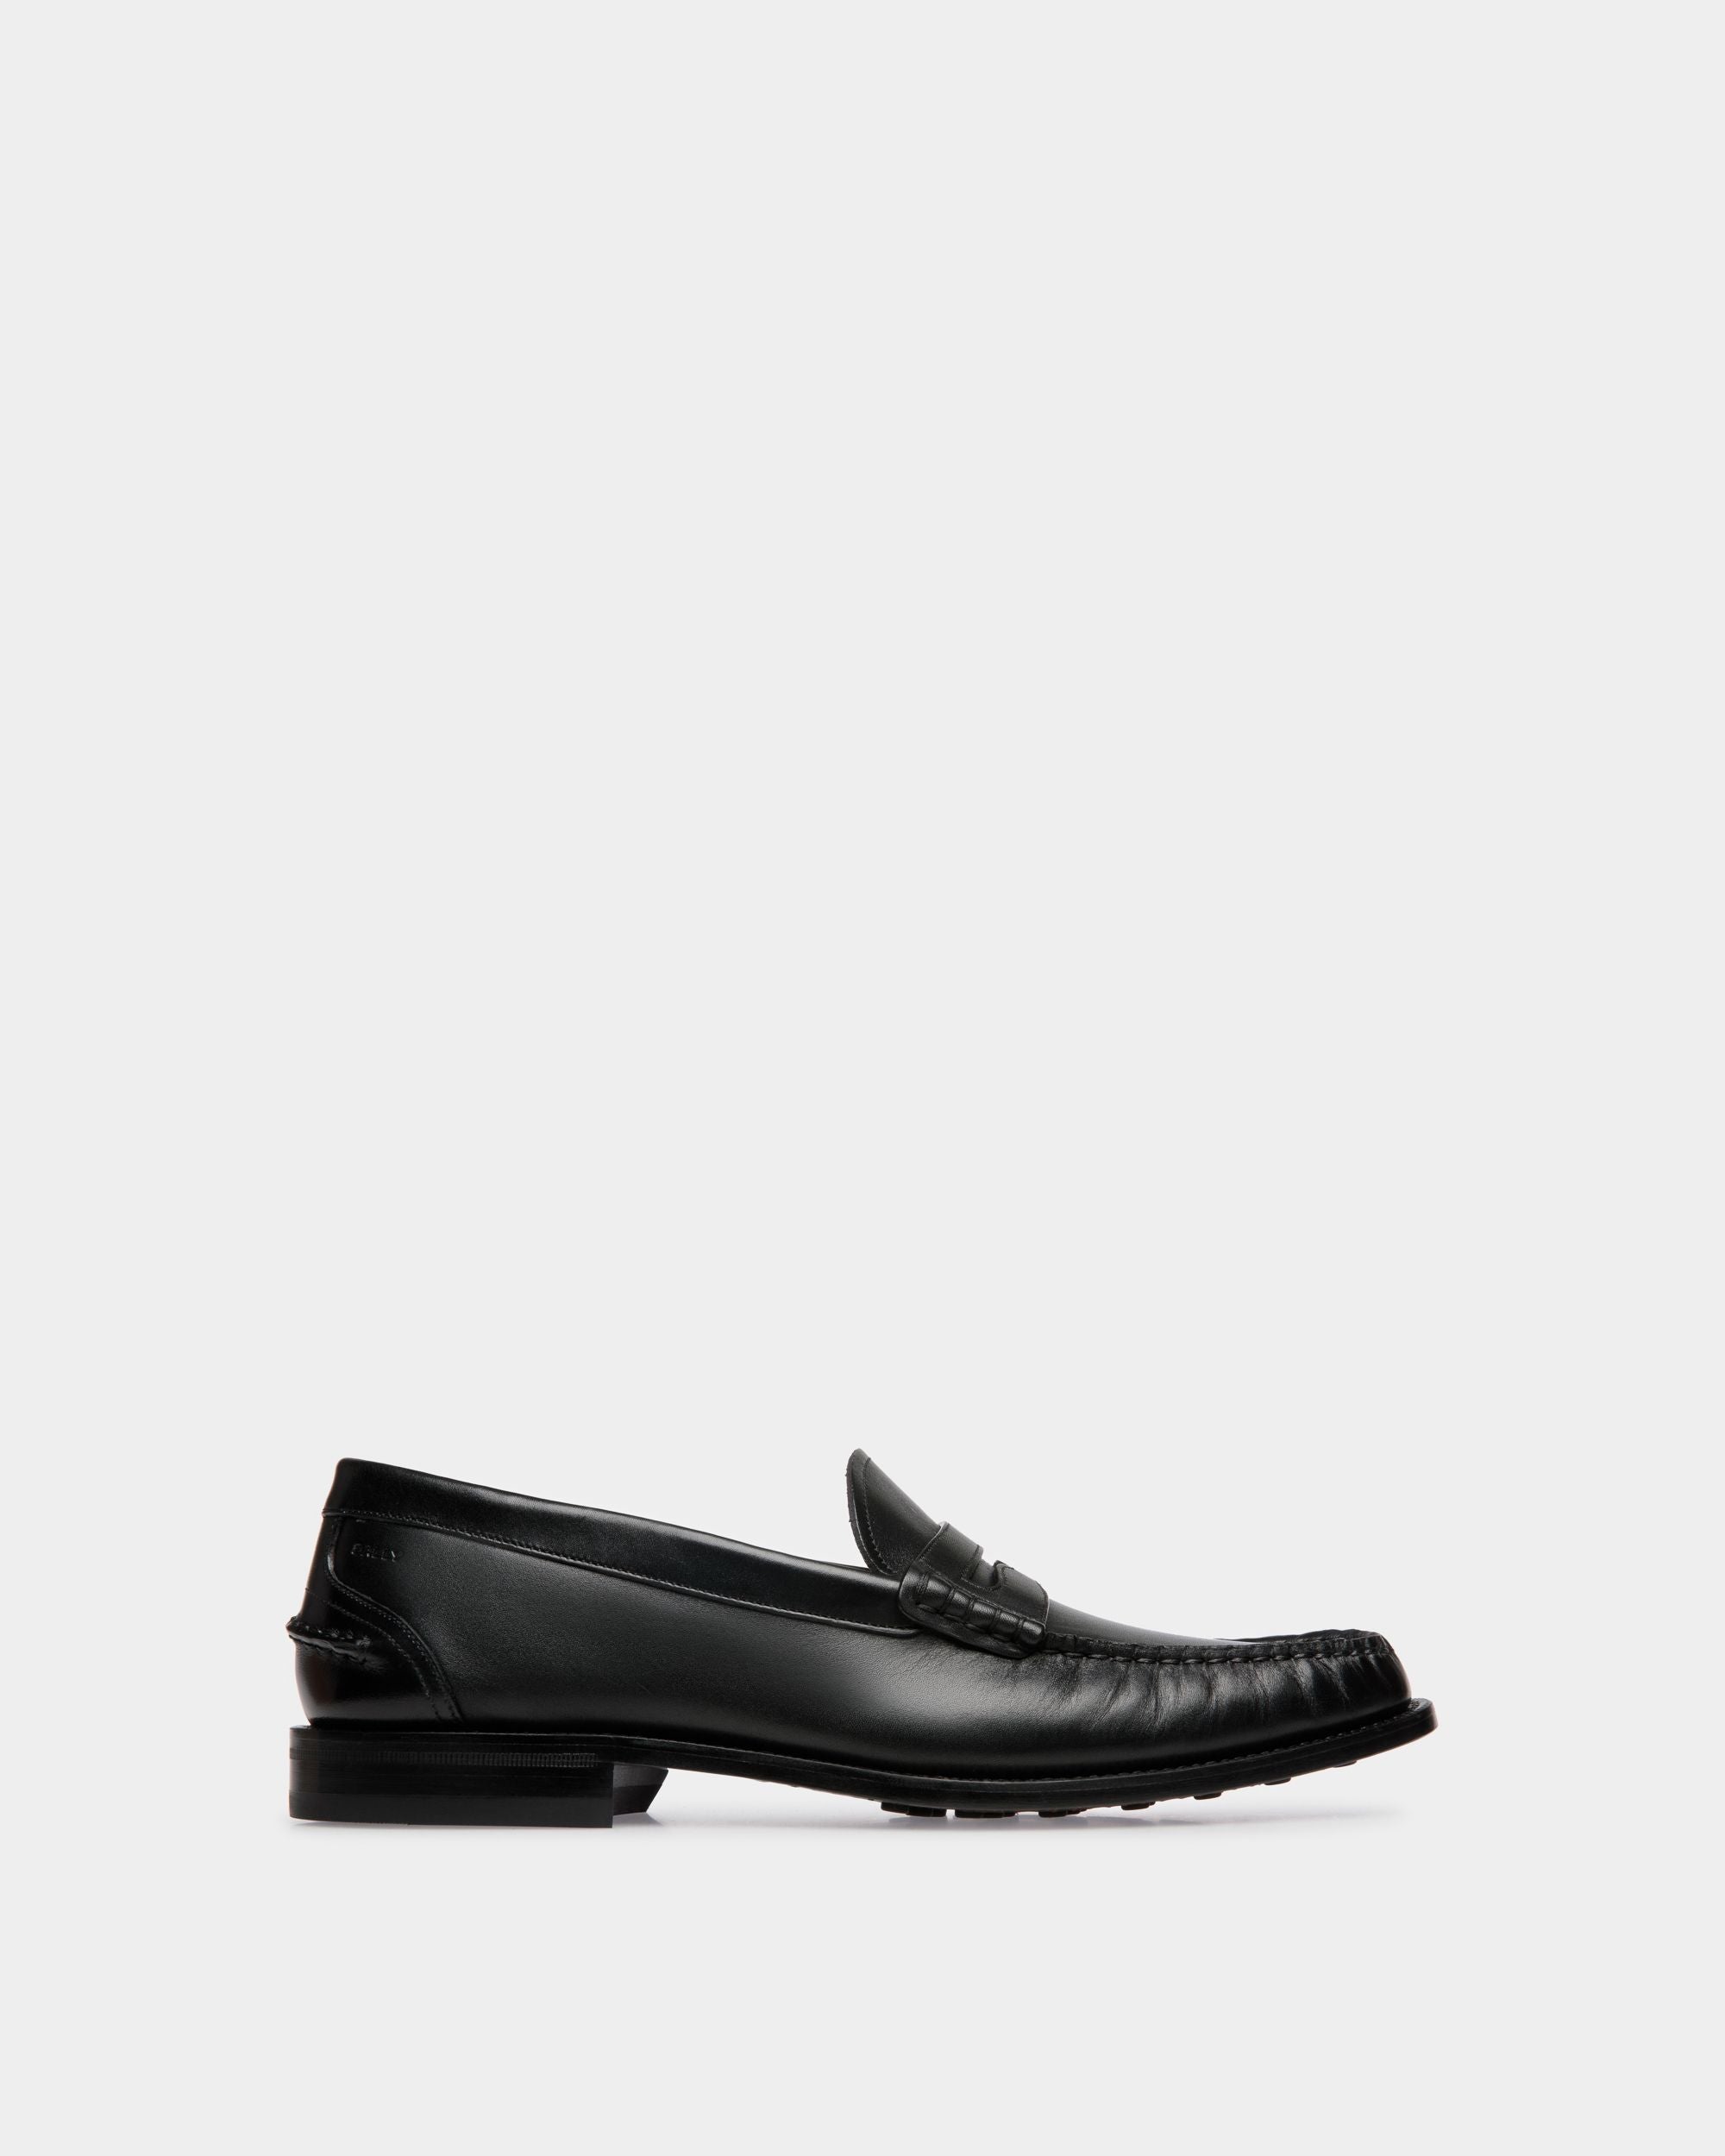 Oregon | Herren-Loafer aus schwarzem Leder | Bally | Still Life Seite